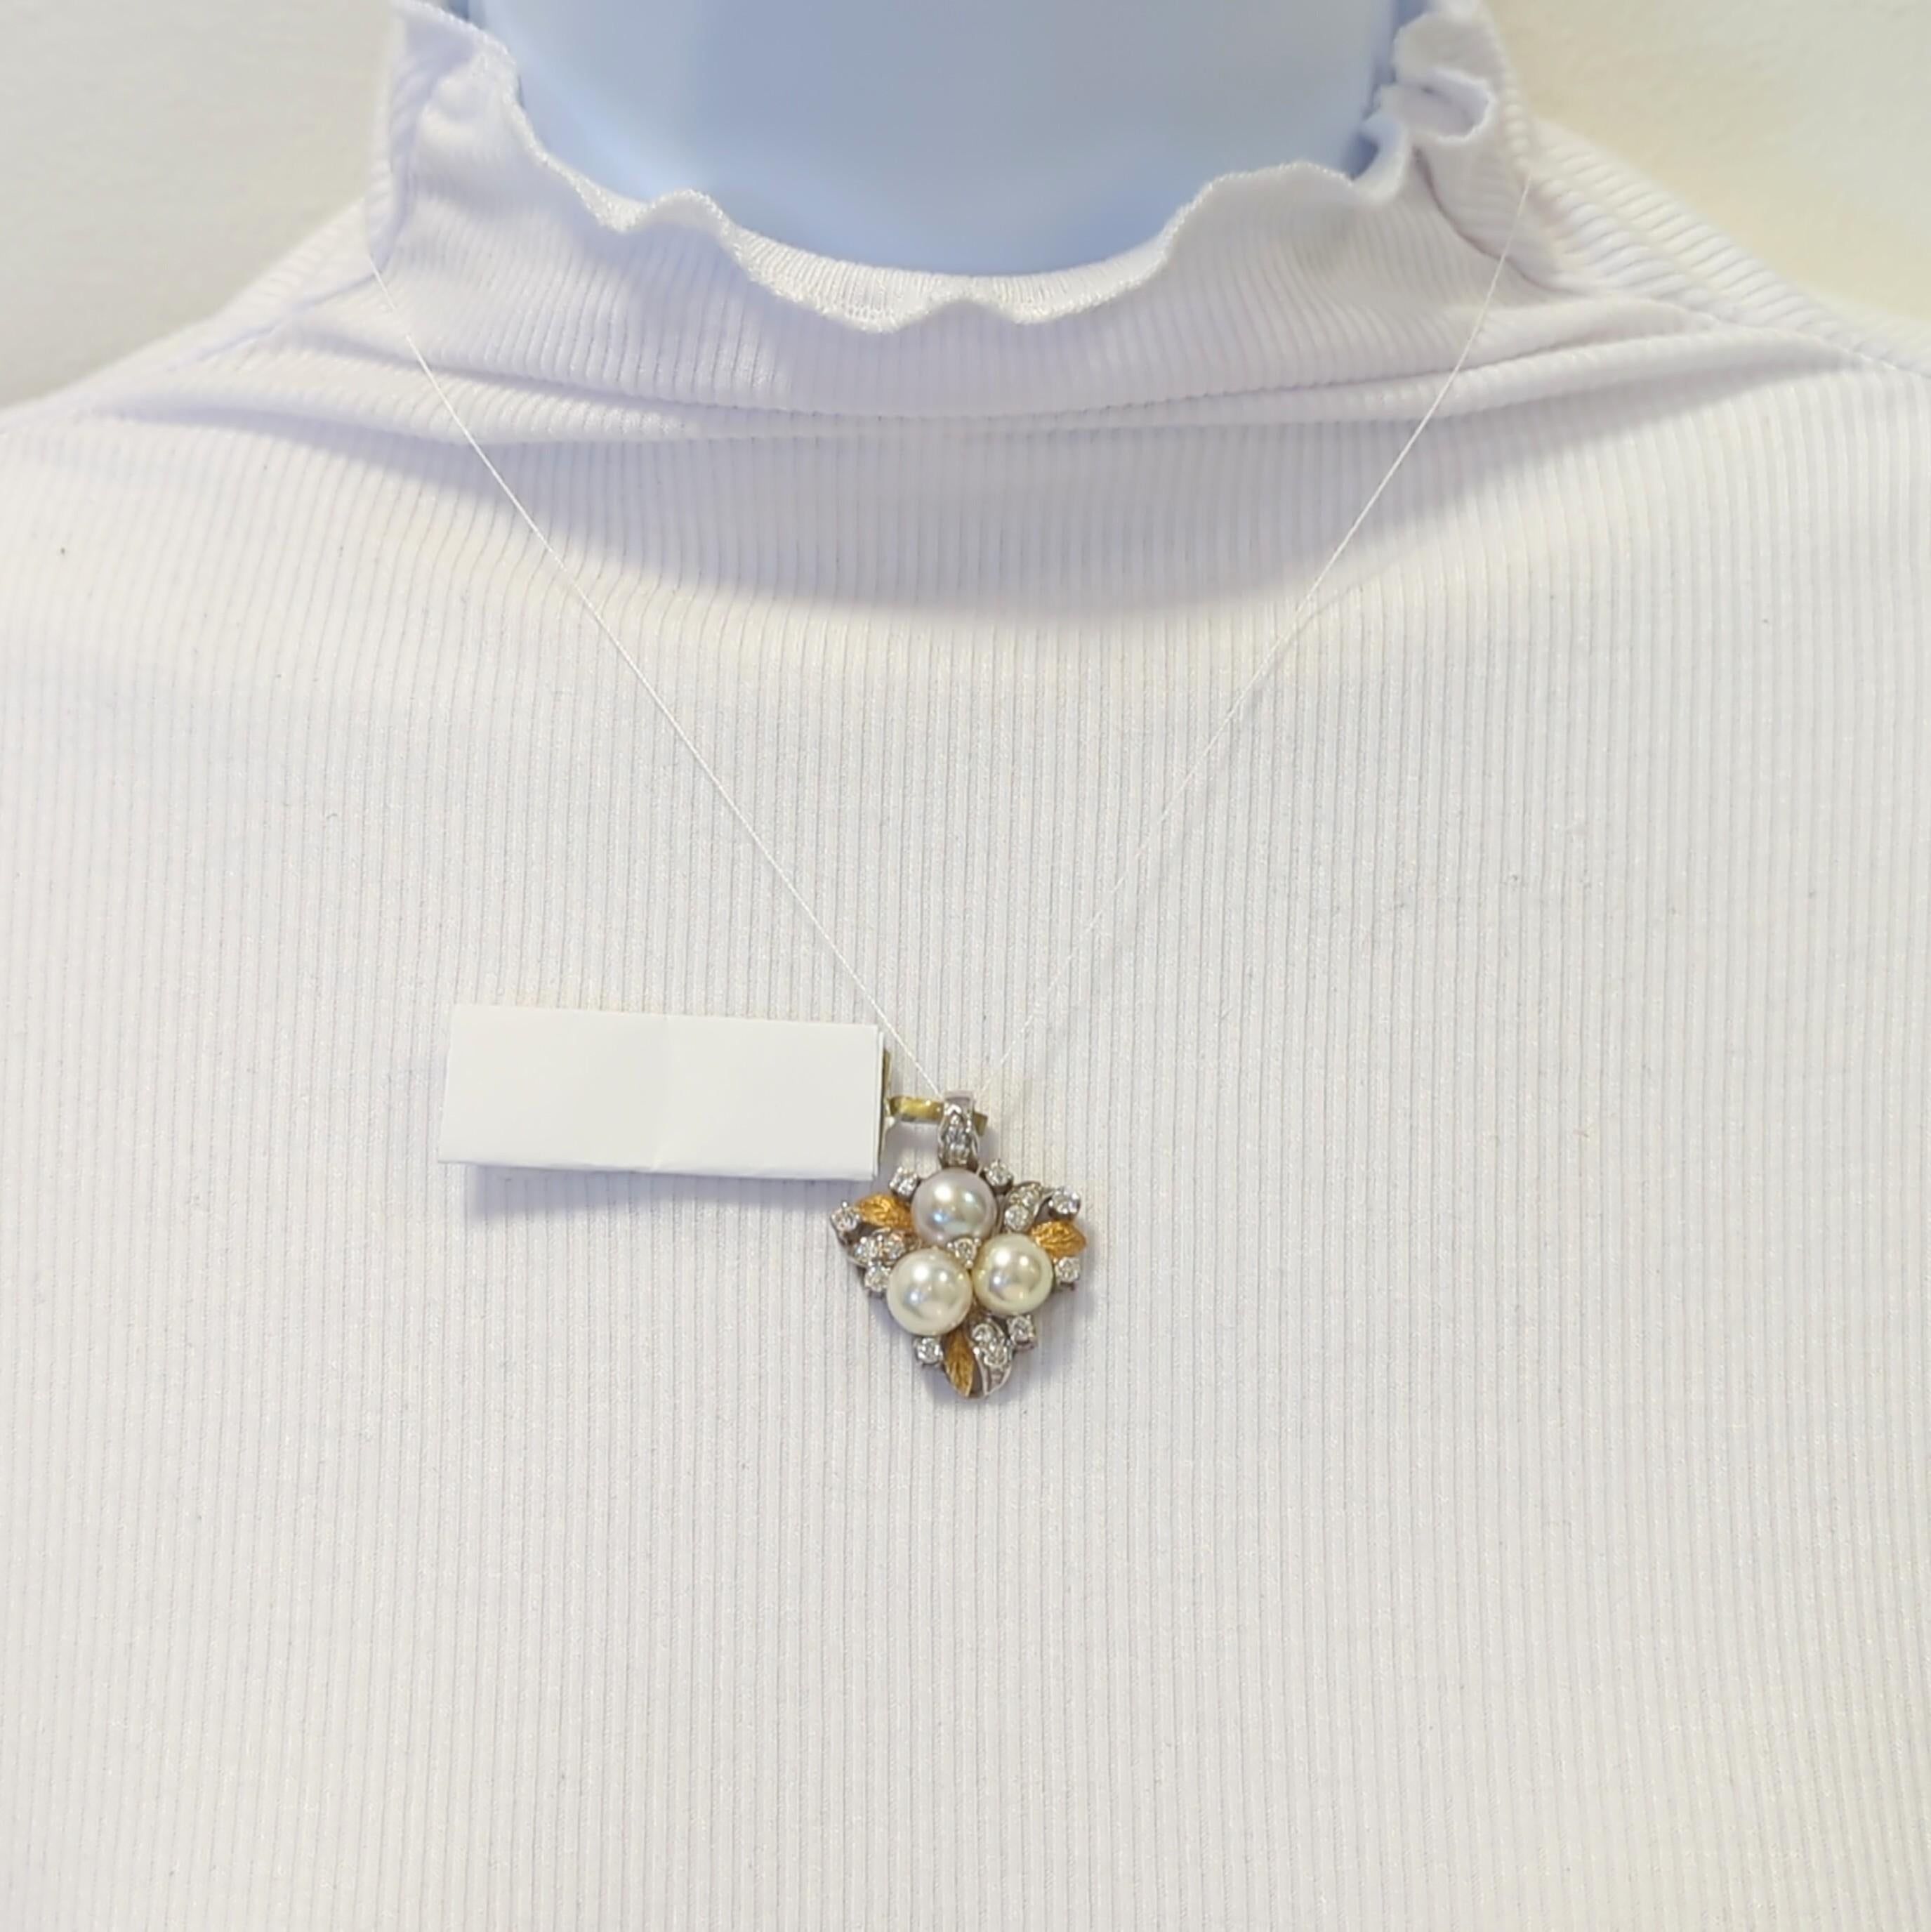 Magnifique pendentif avec 3 perles blanches rondes et des diamants blancs ronds de bonne qualité.  Fabriqué à la main en or blanc et jaune 18 carats.  Des chaînes peuvent être fournies moyennant un supplément.